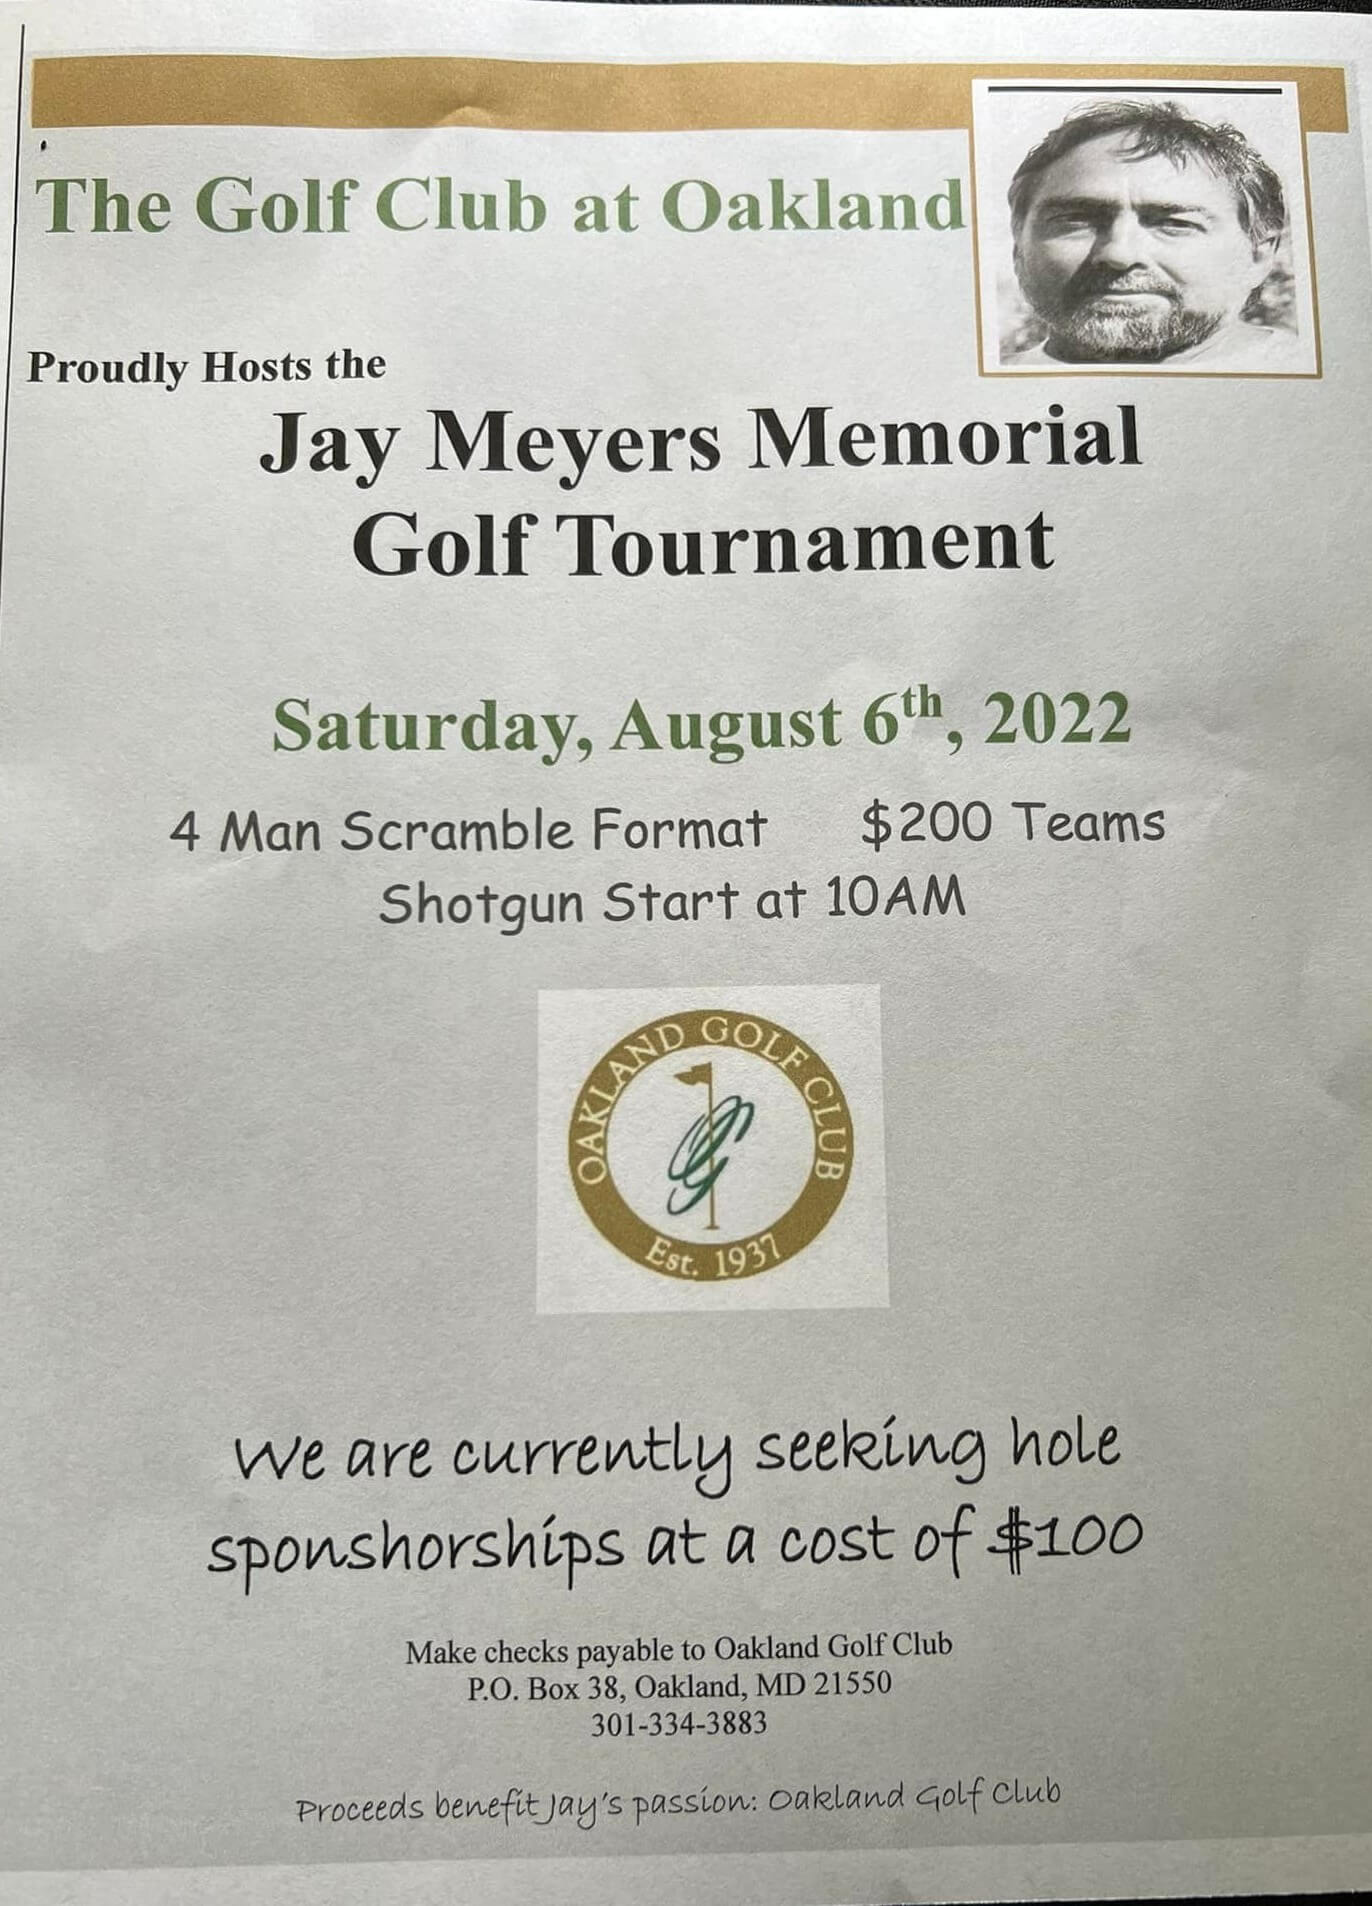 Jay Meyers Memorial Golf Tournament